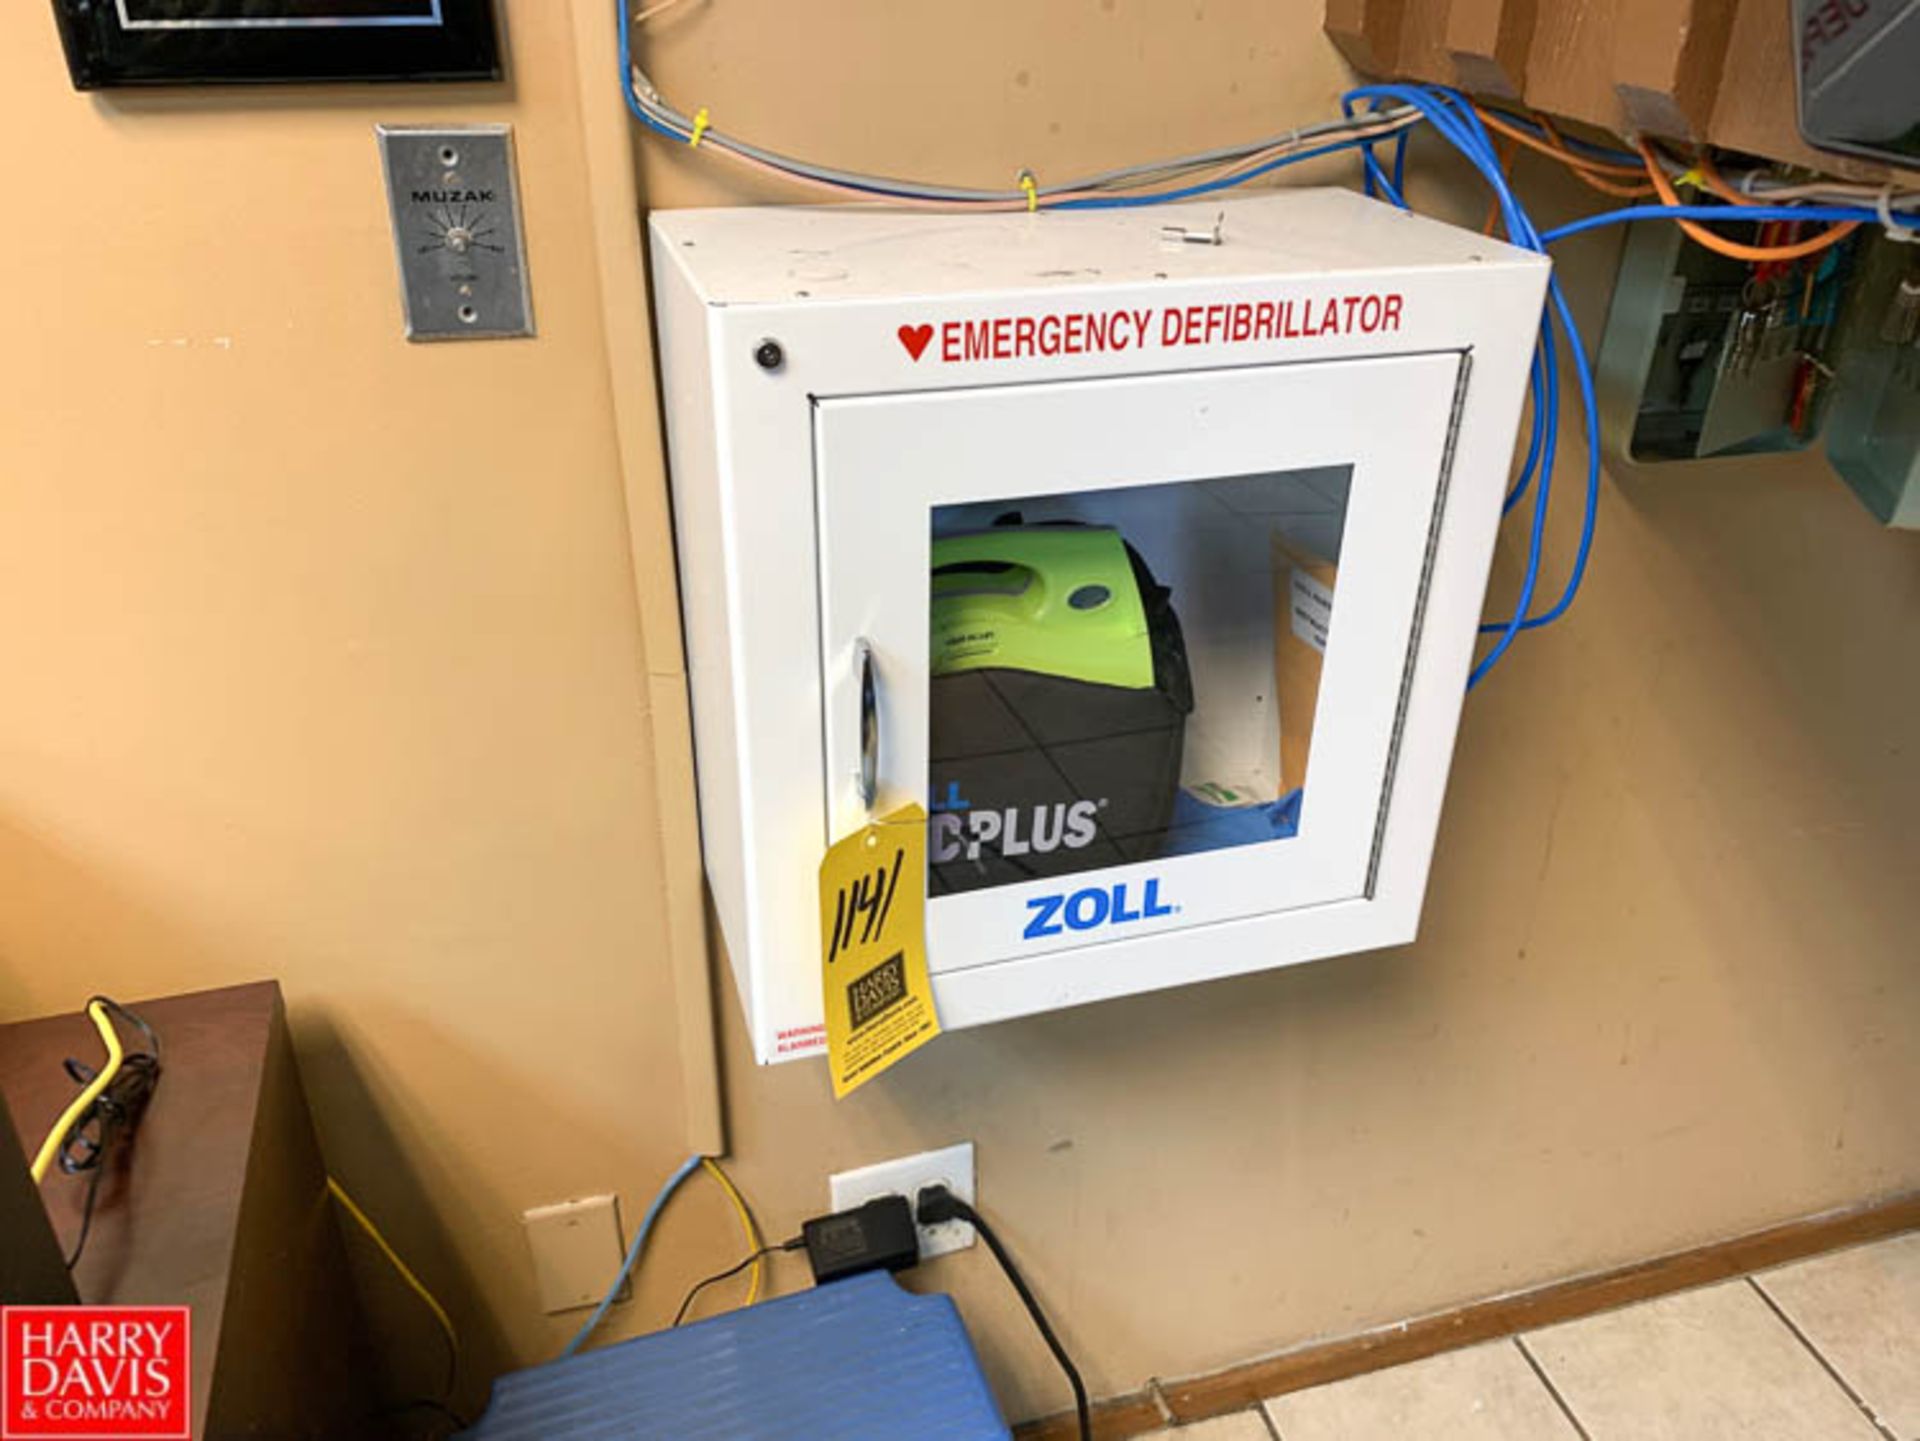 Zoll Emergency Defibrillator - Rigging Fee: $20